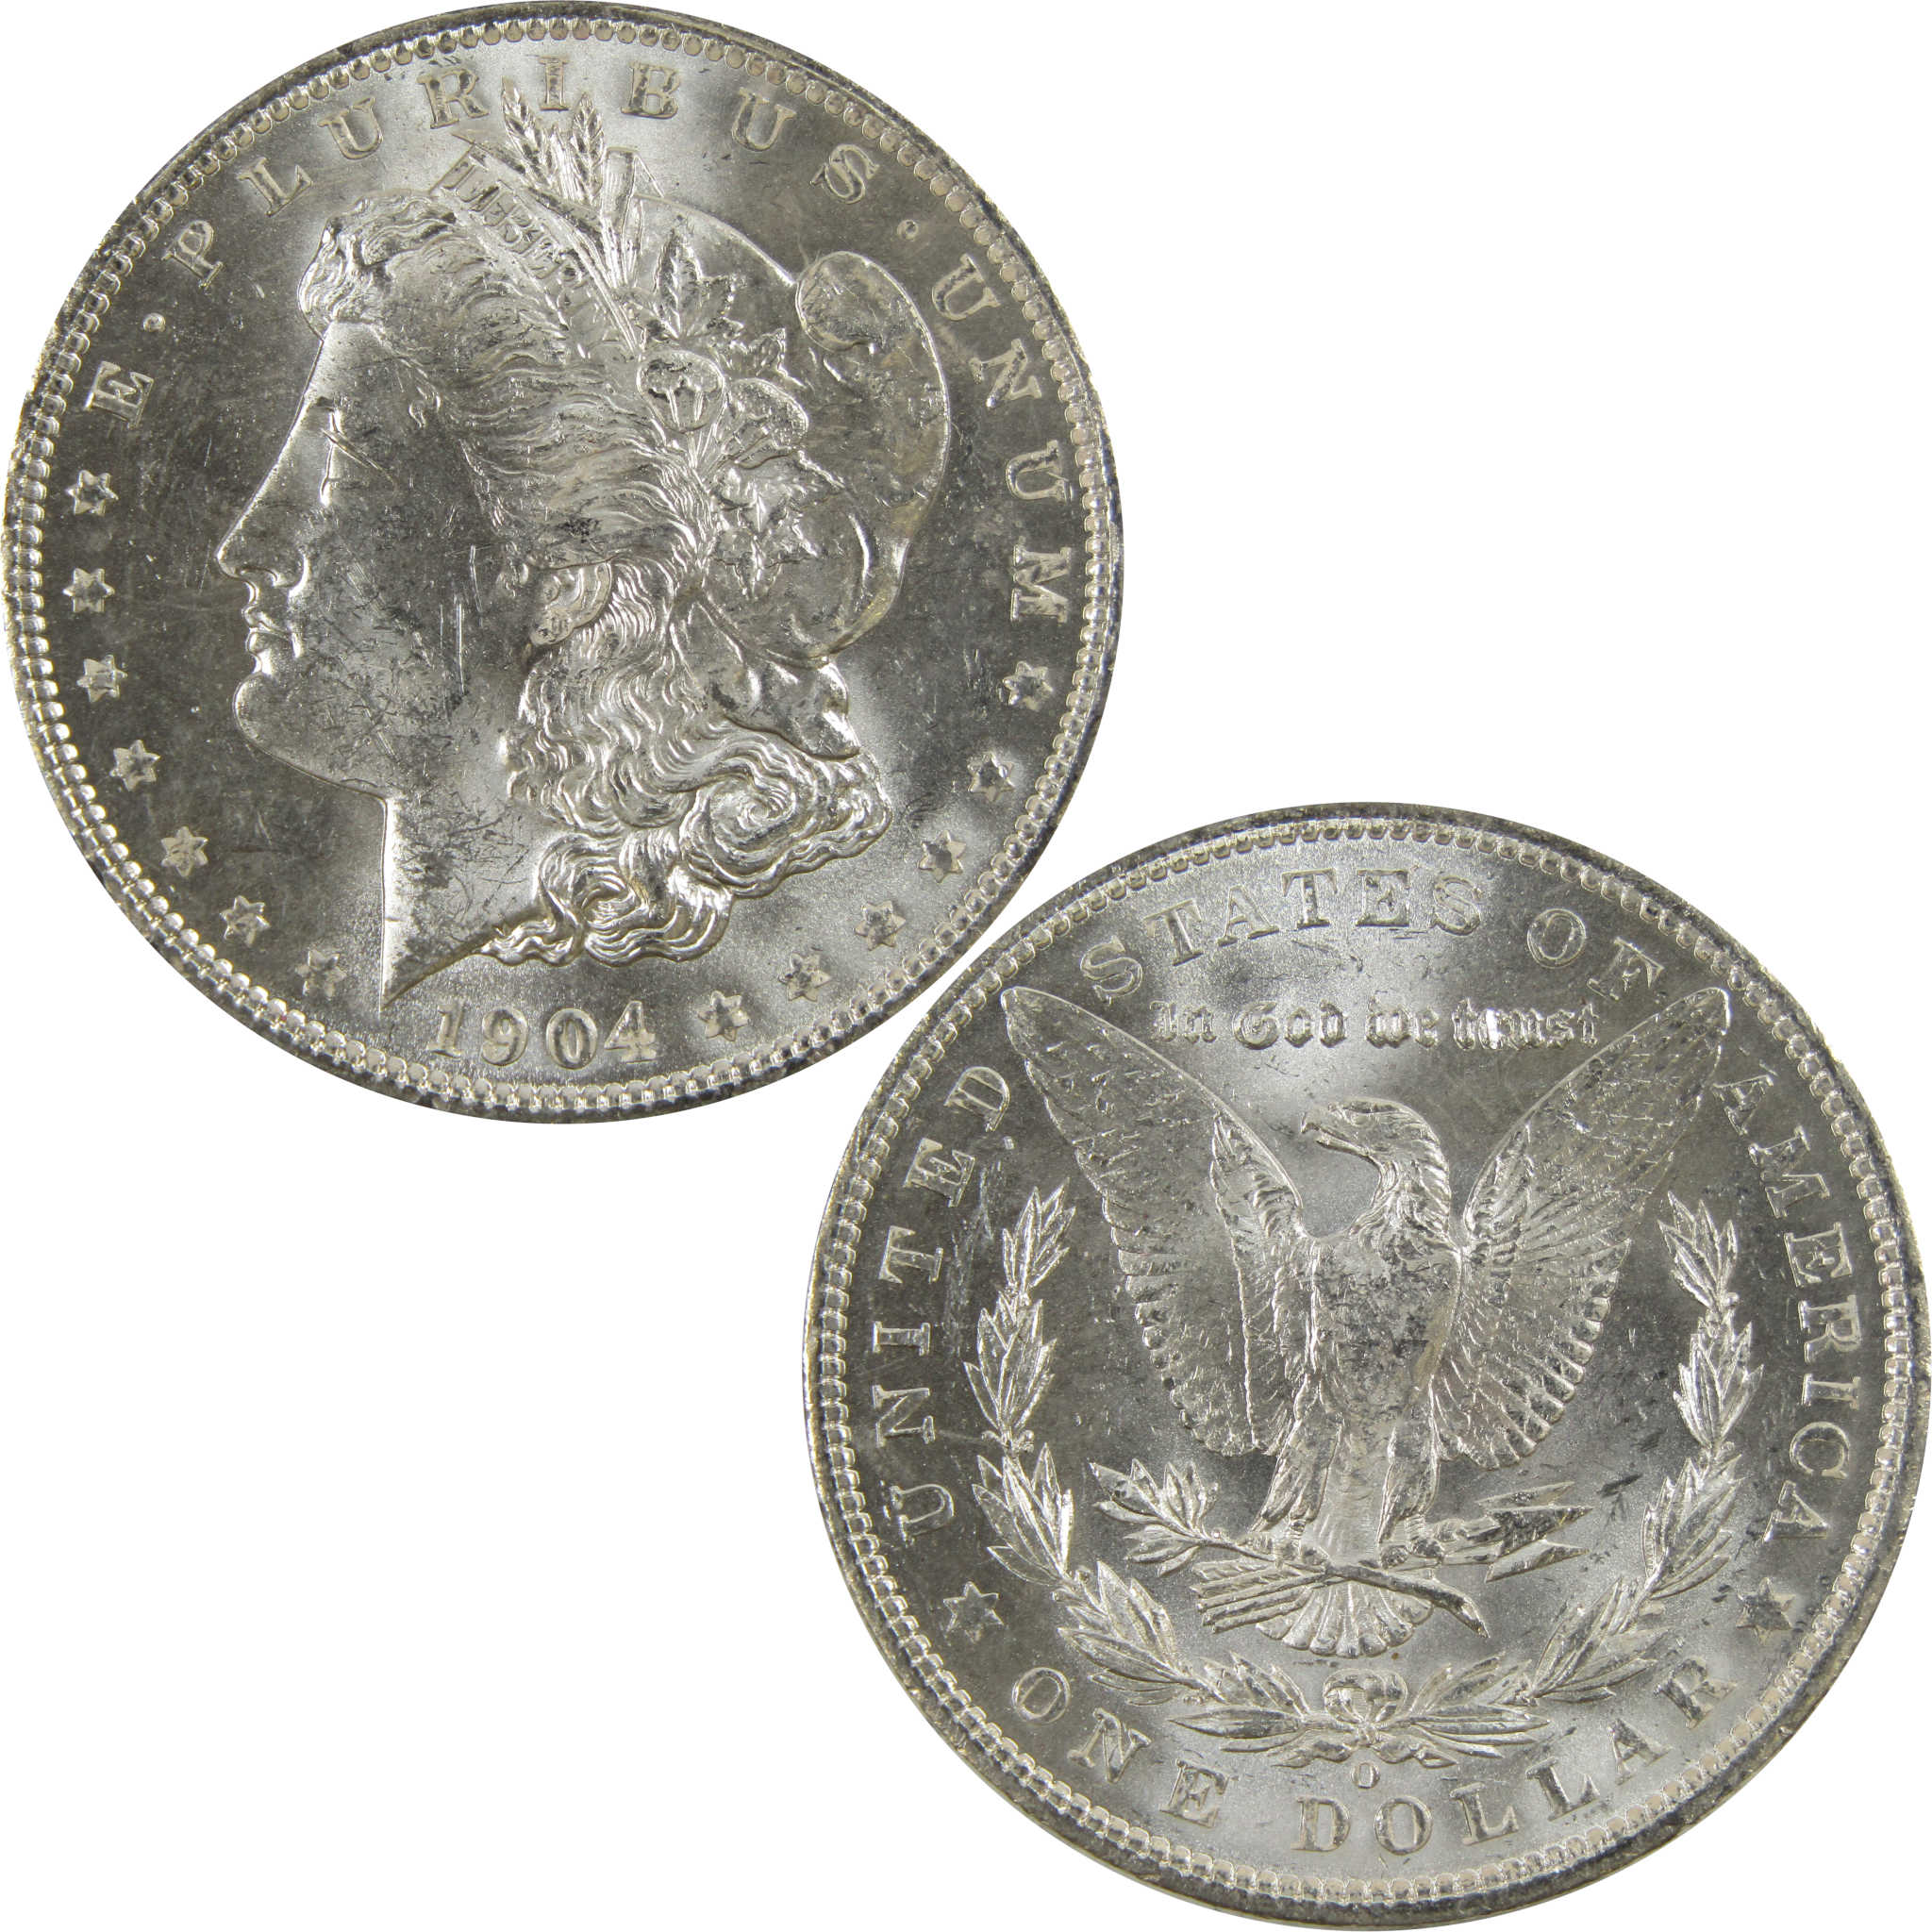 1904 O Morgan Dollar BU Uncirculated 90% Silver $1 Coin SKU:I5220 - Morgan coin - Morgan silver dollar - Morgan silver dollar for sale - Profile Coins &amp; Collectibles